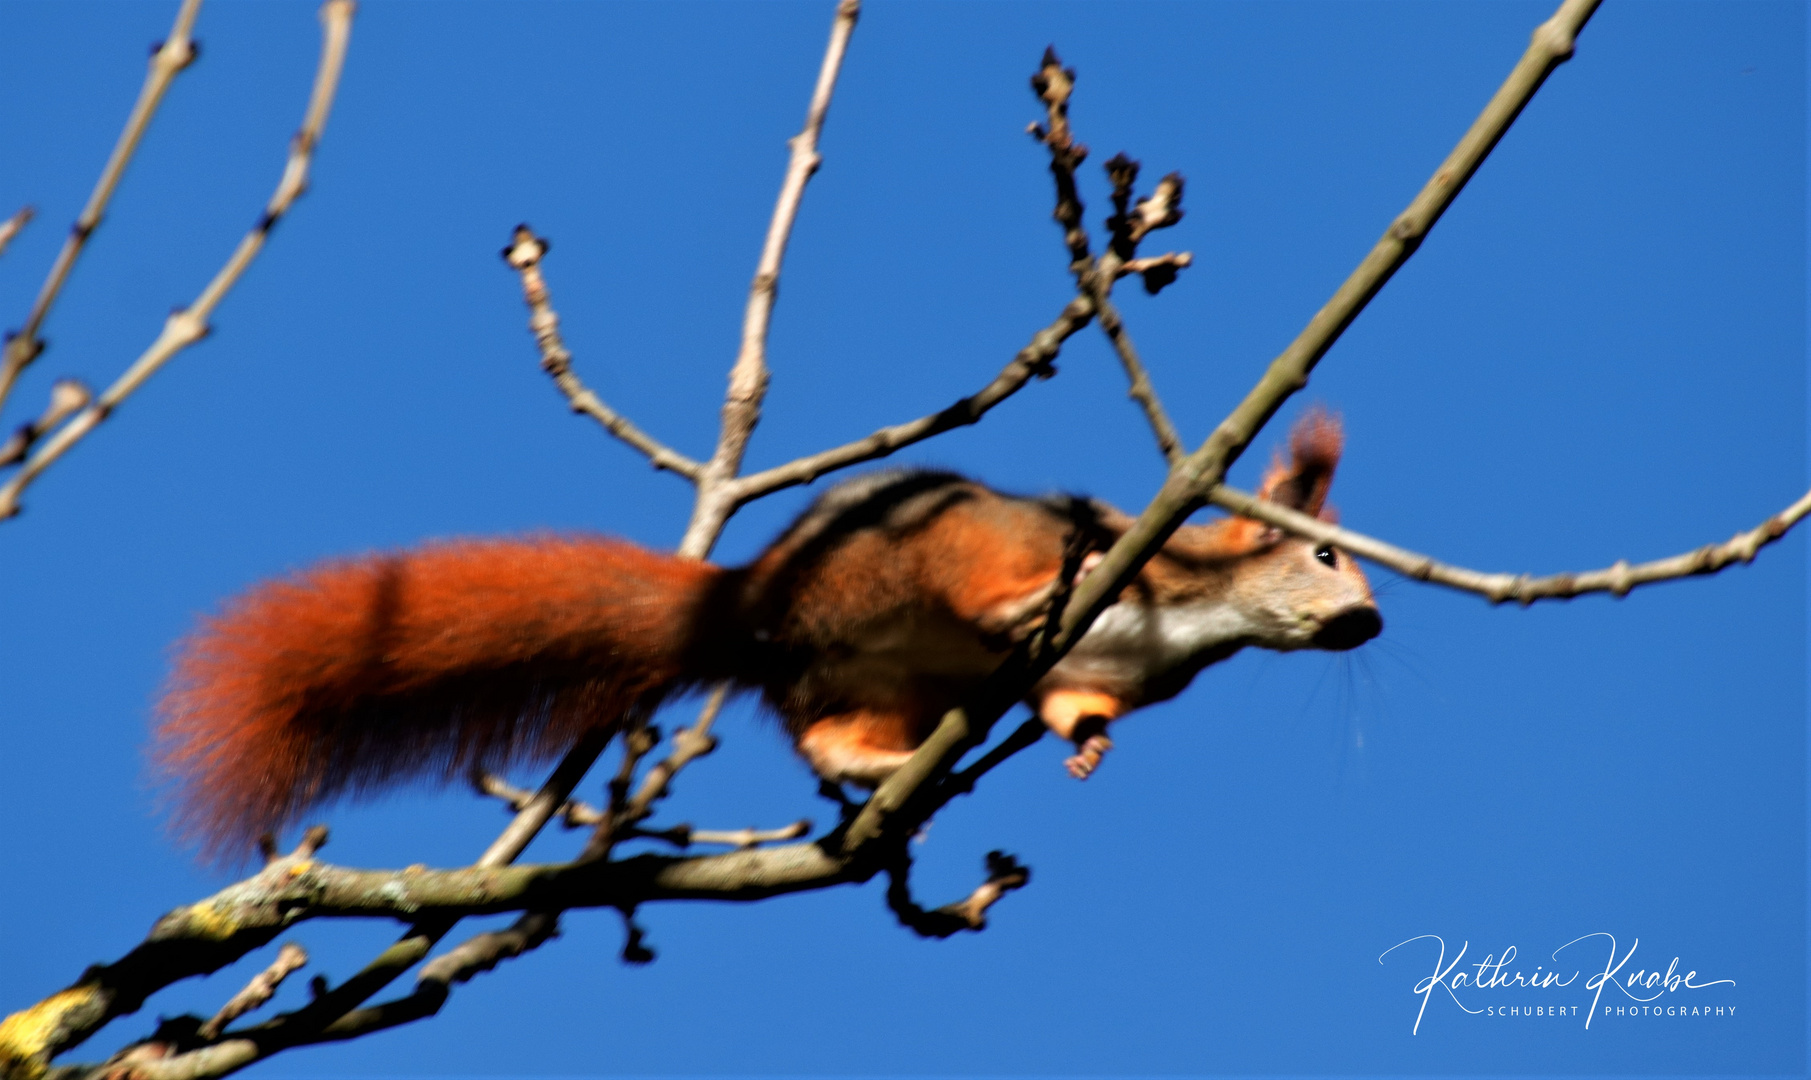 In luftiger Höhe schwingt sich das Eichhörnchen von Ast zu Ast